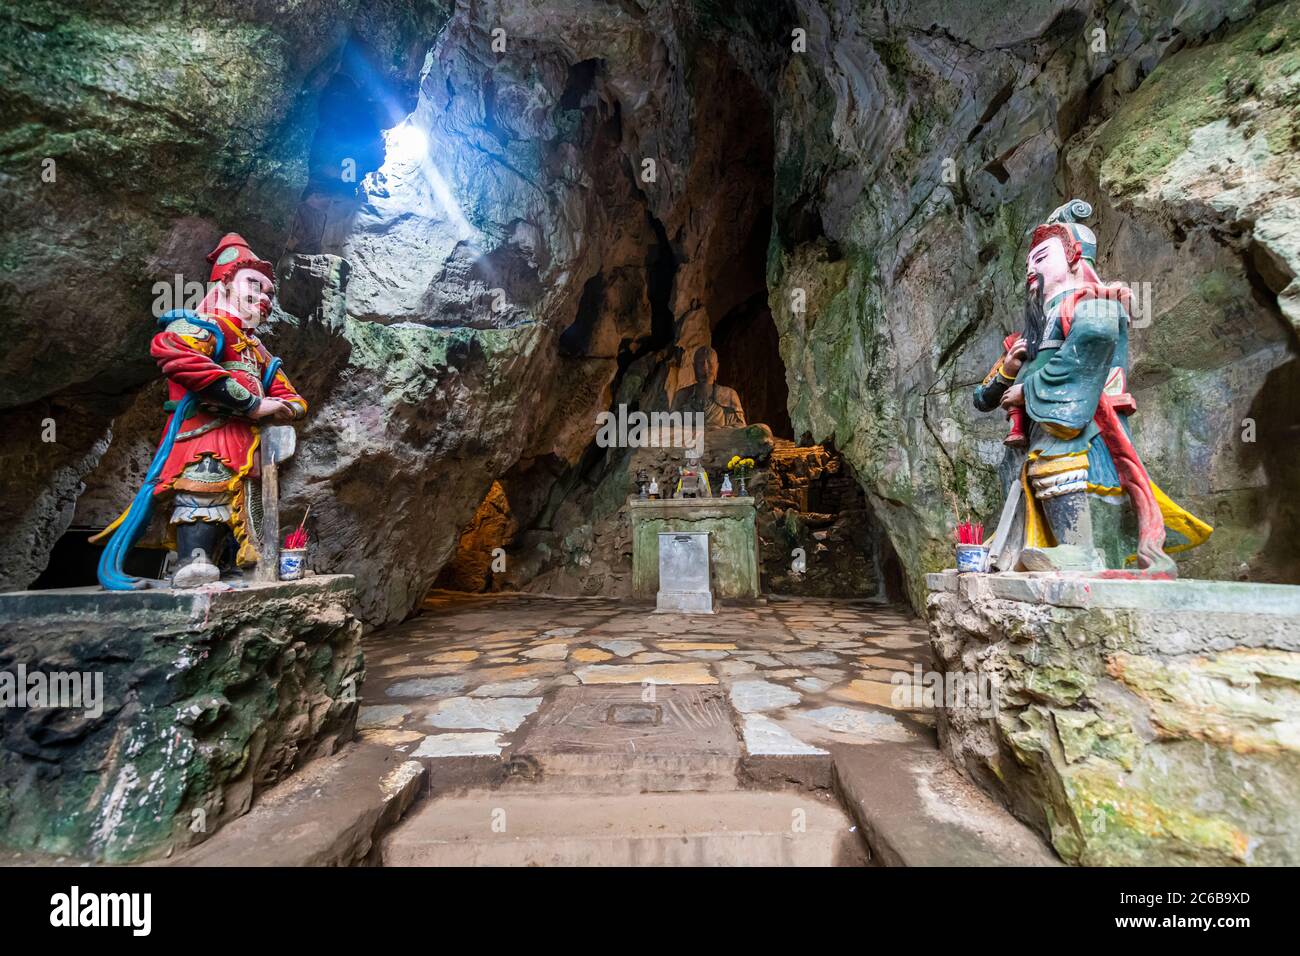 Statues de soldats à l'entrée d'une grotte dans les montagnes de marbre, Da Nang, Vietnam, Indochine, Asie du Sud-est, Asie Banque D'Images